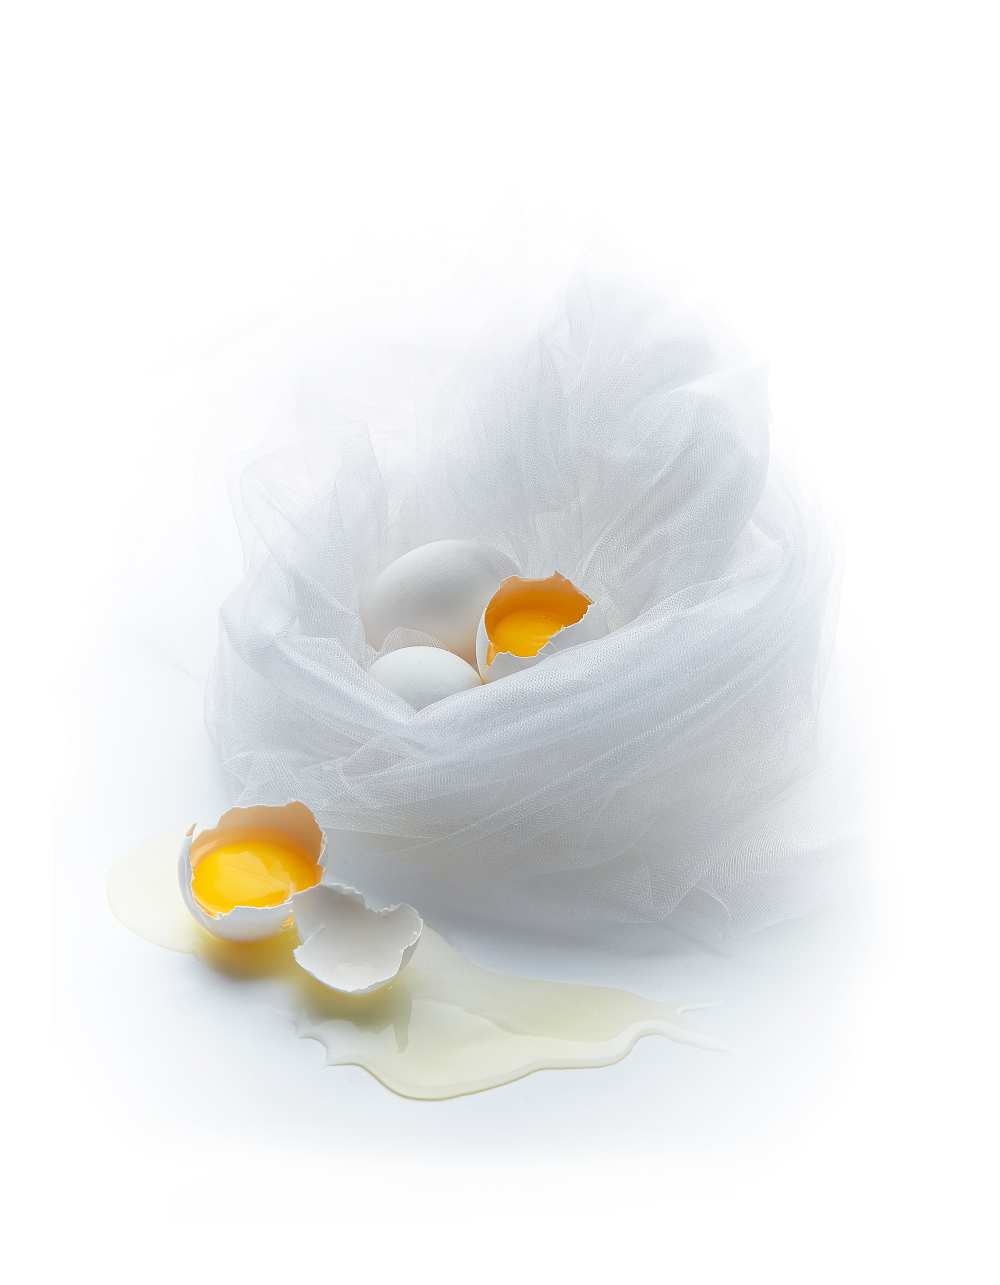 Eggs von Dmitriy Batenko